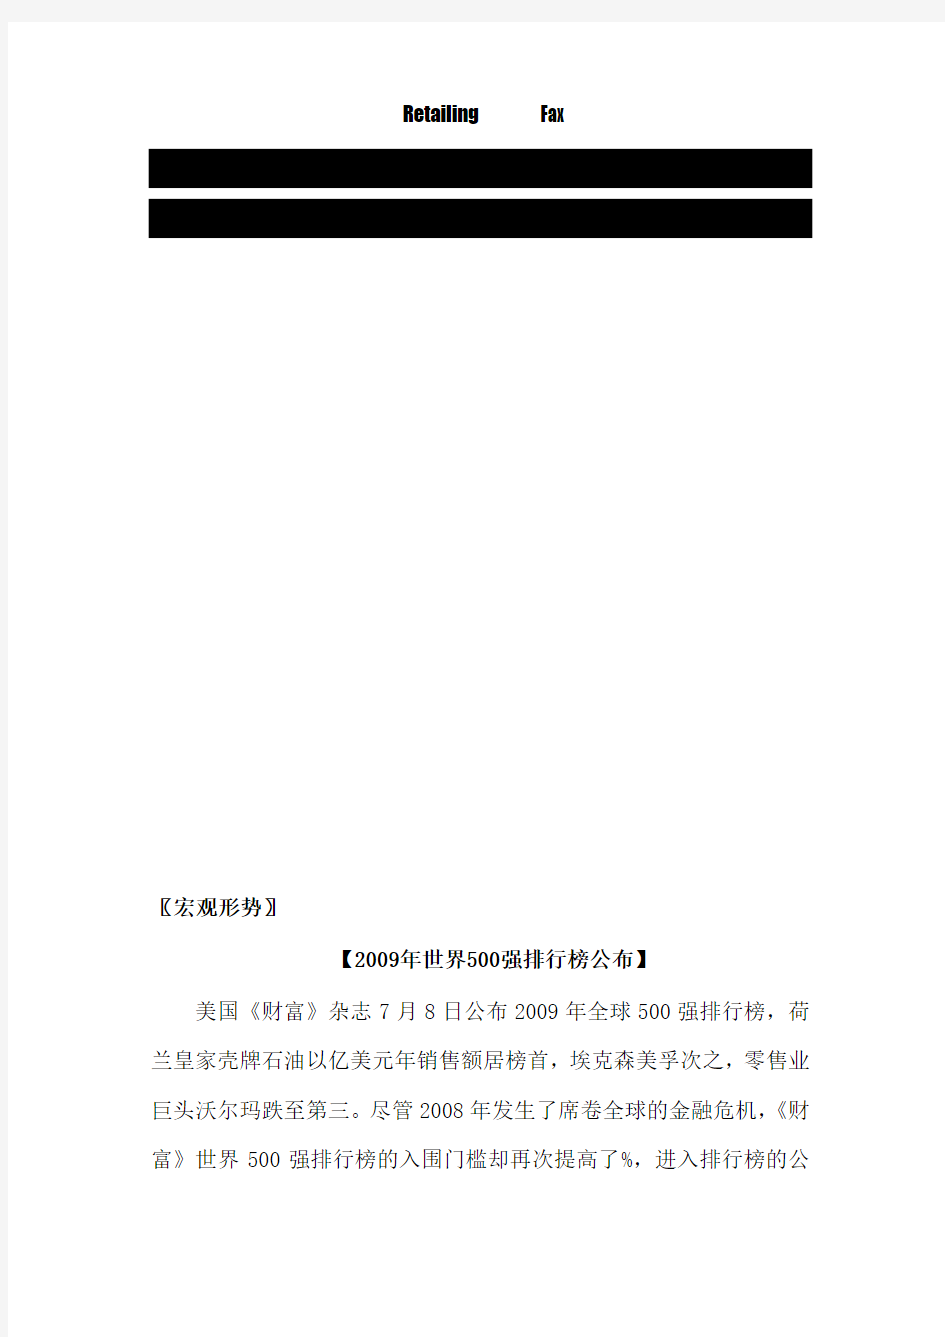 中国连锁经营协会公布生鲜经营基本数据